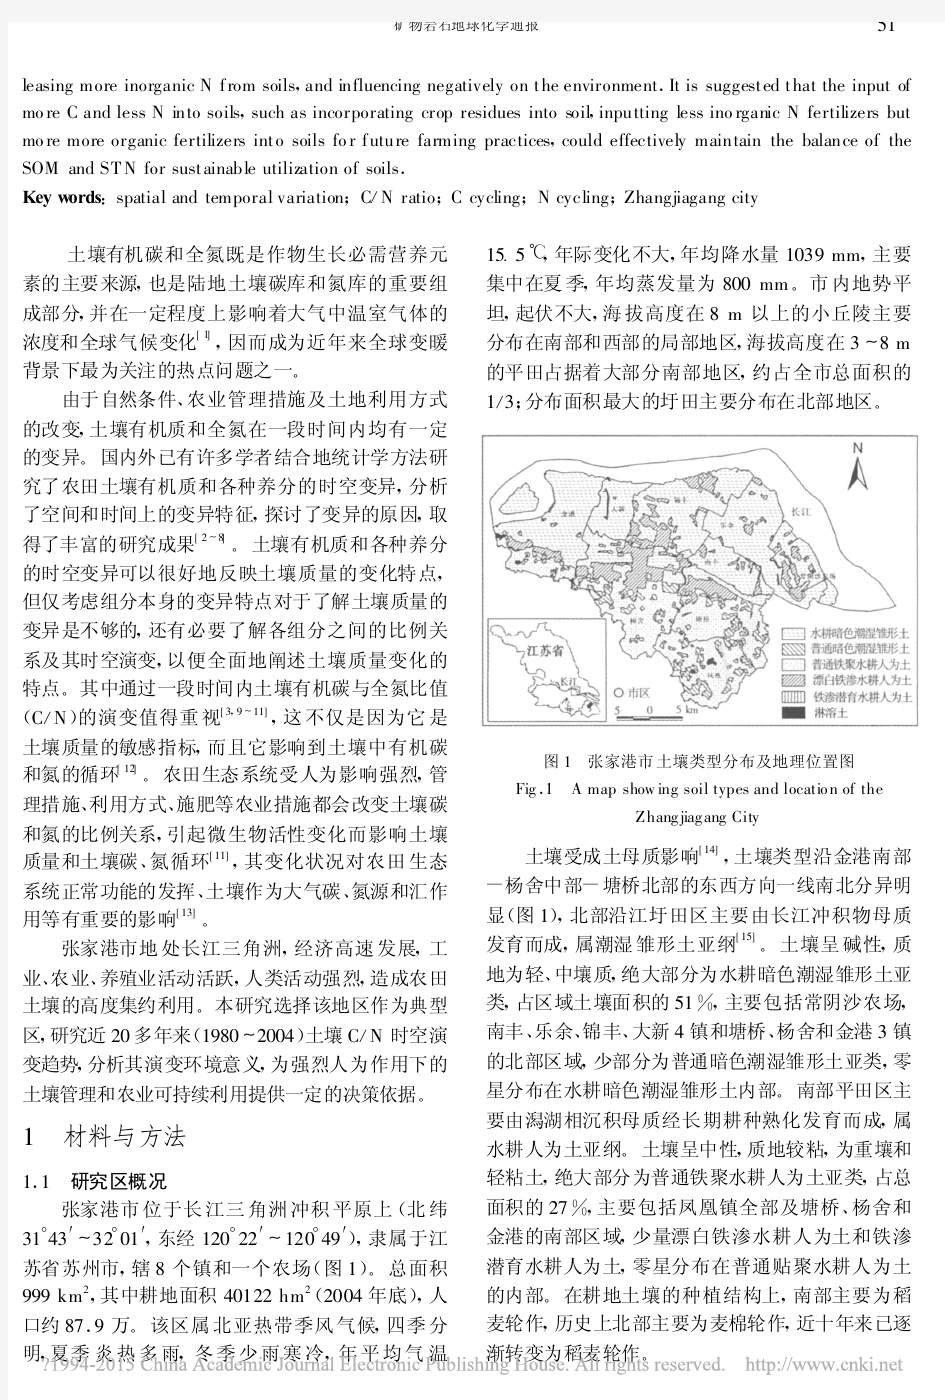 长江三角洲典型区农田土壤碳氮比值的演变趋势及其环境意义_齐雁冰